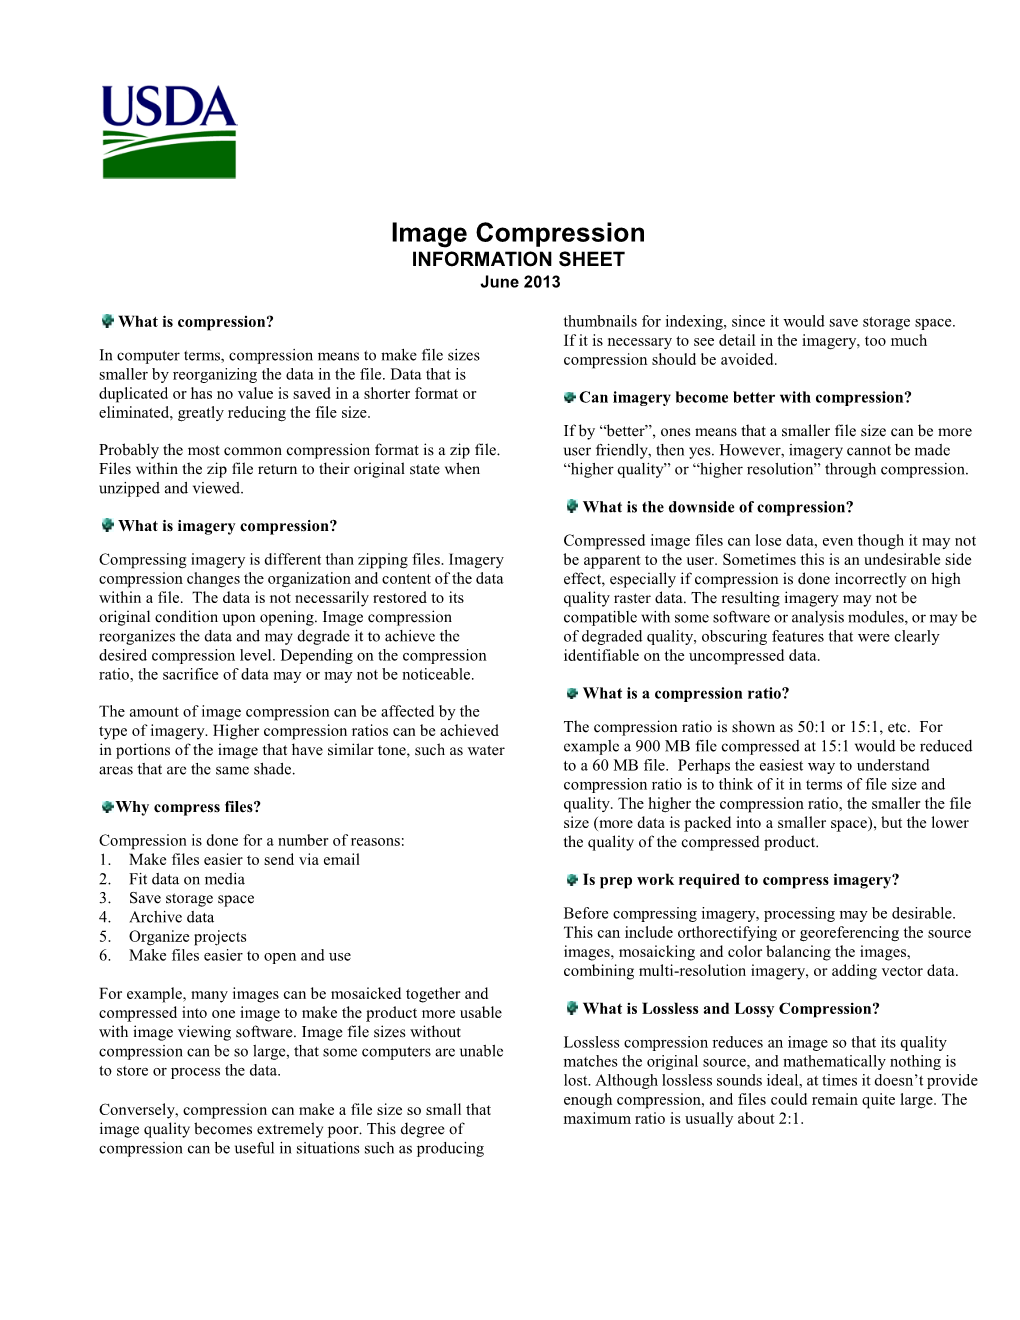 Image Compression INFORMATION SHEET June 2013